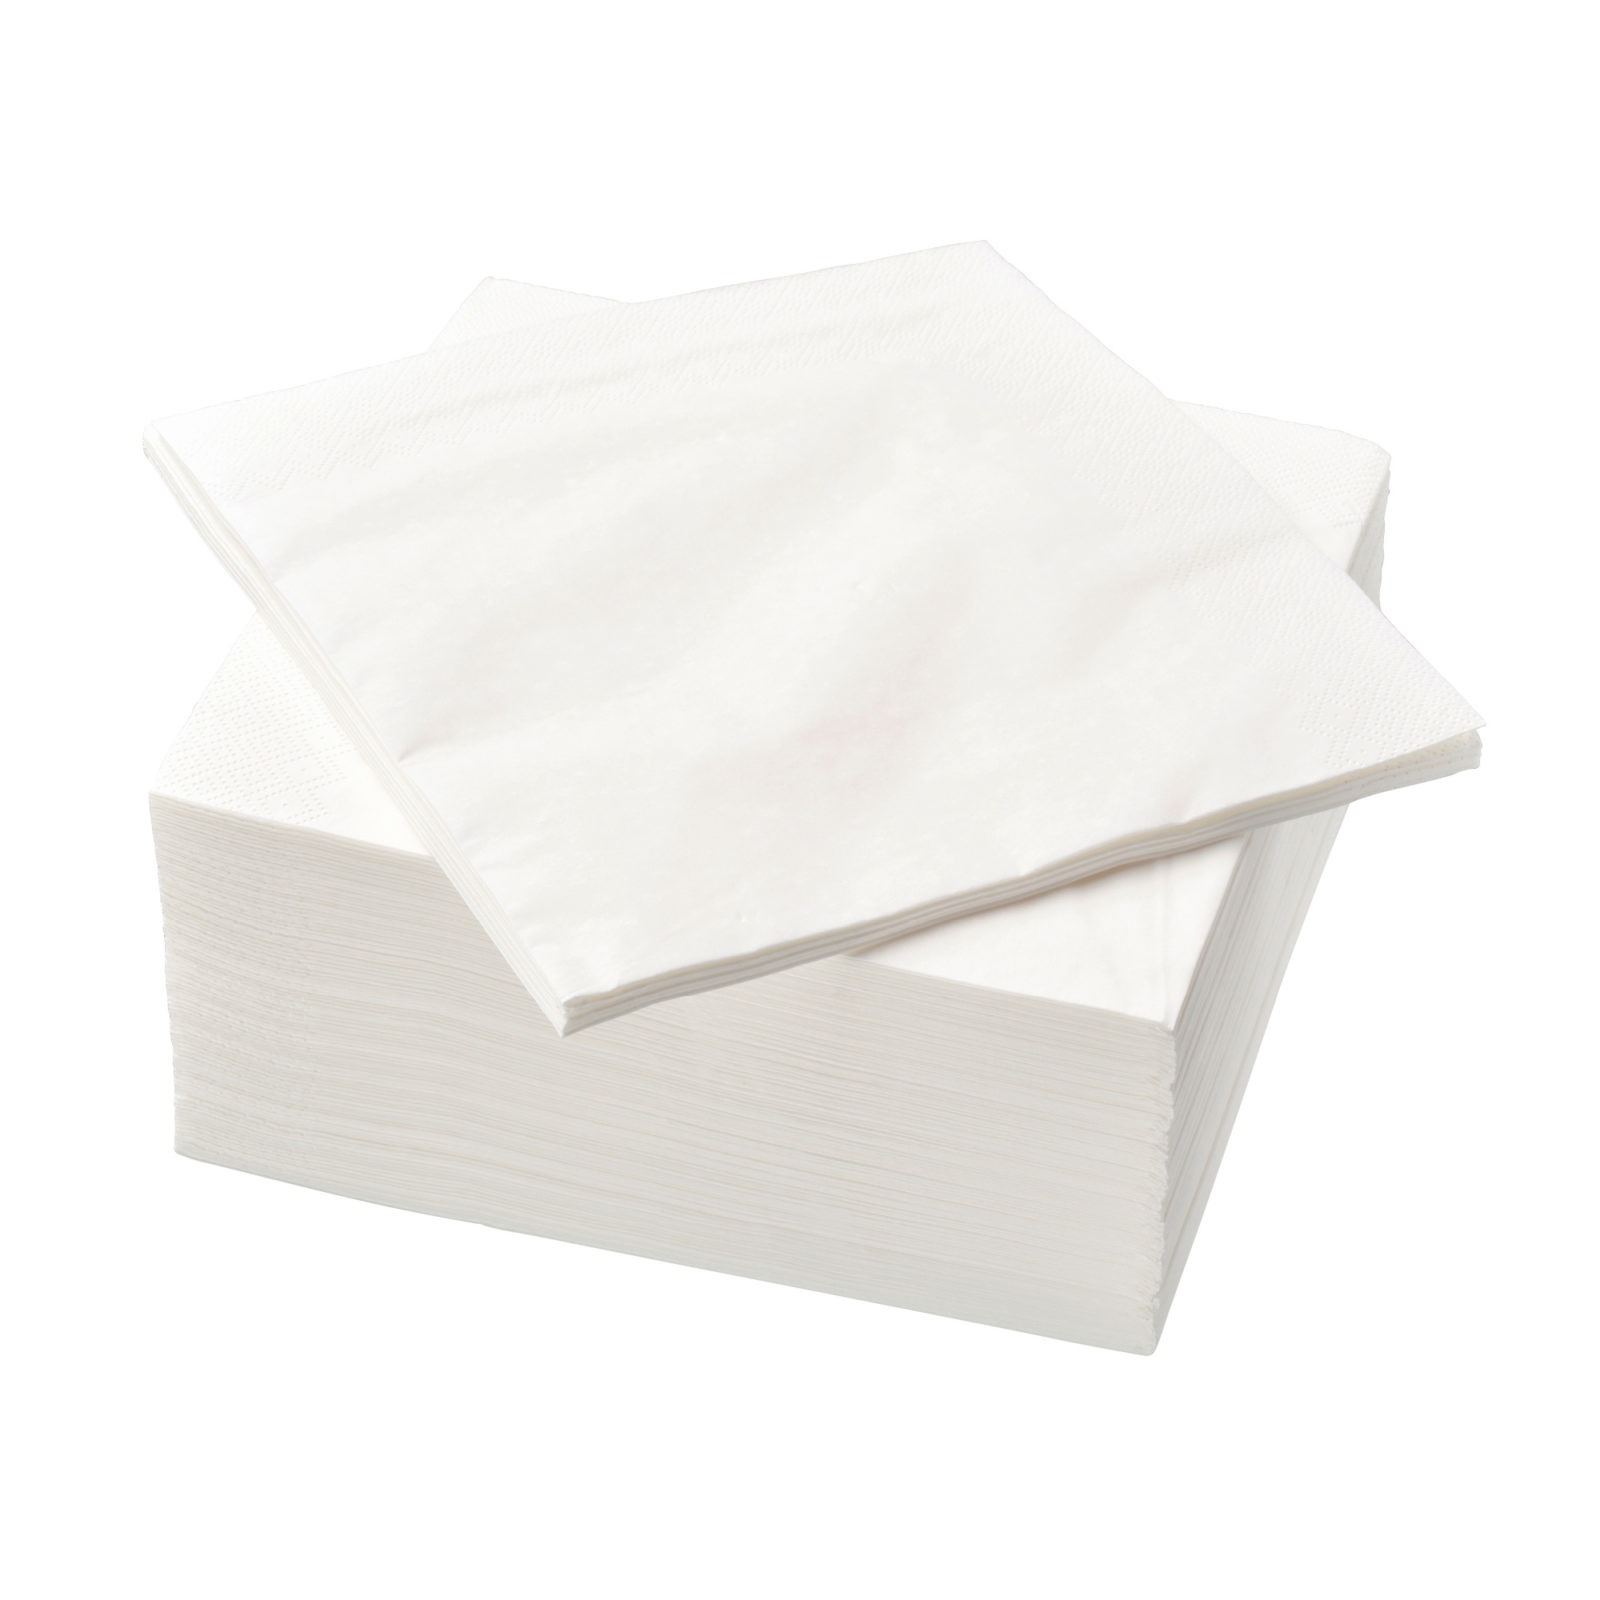 Une pile de serviettes en papier blanches.